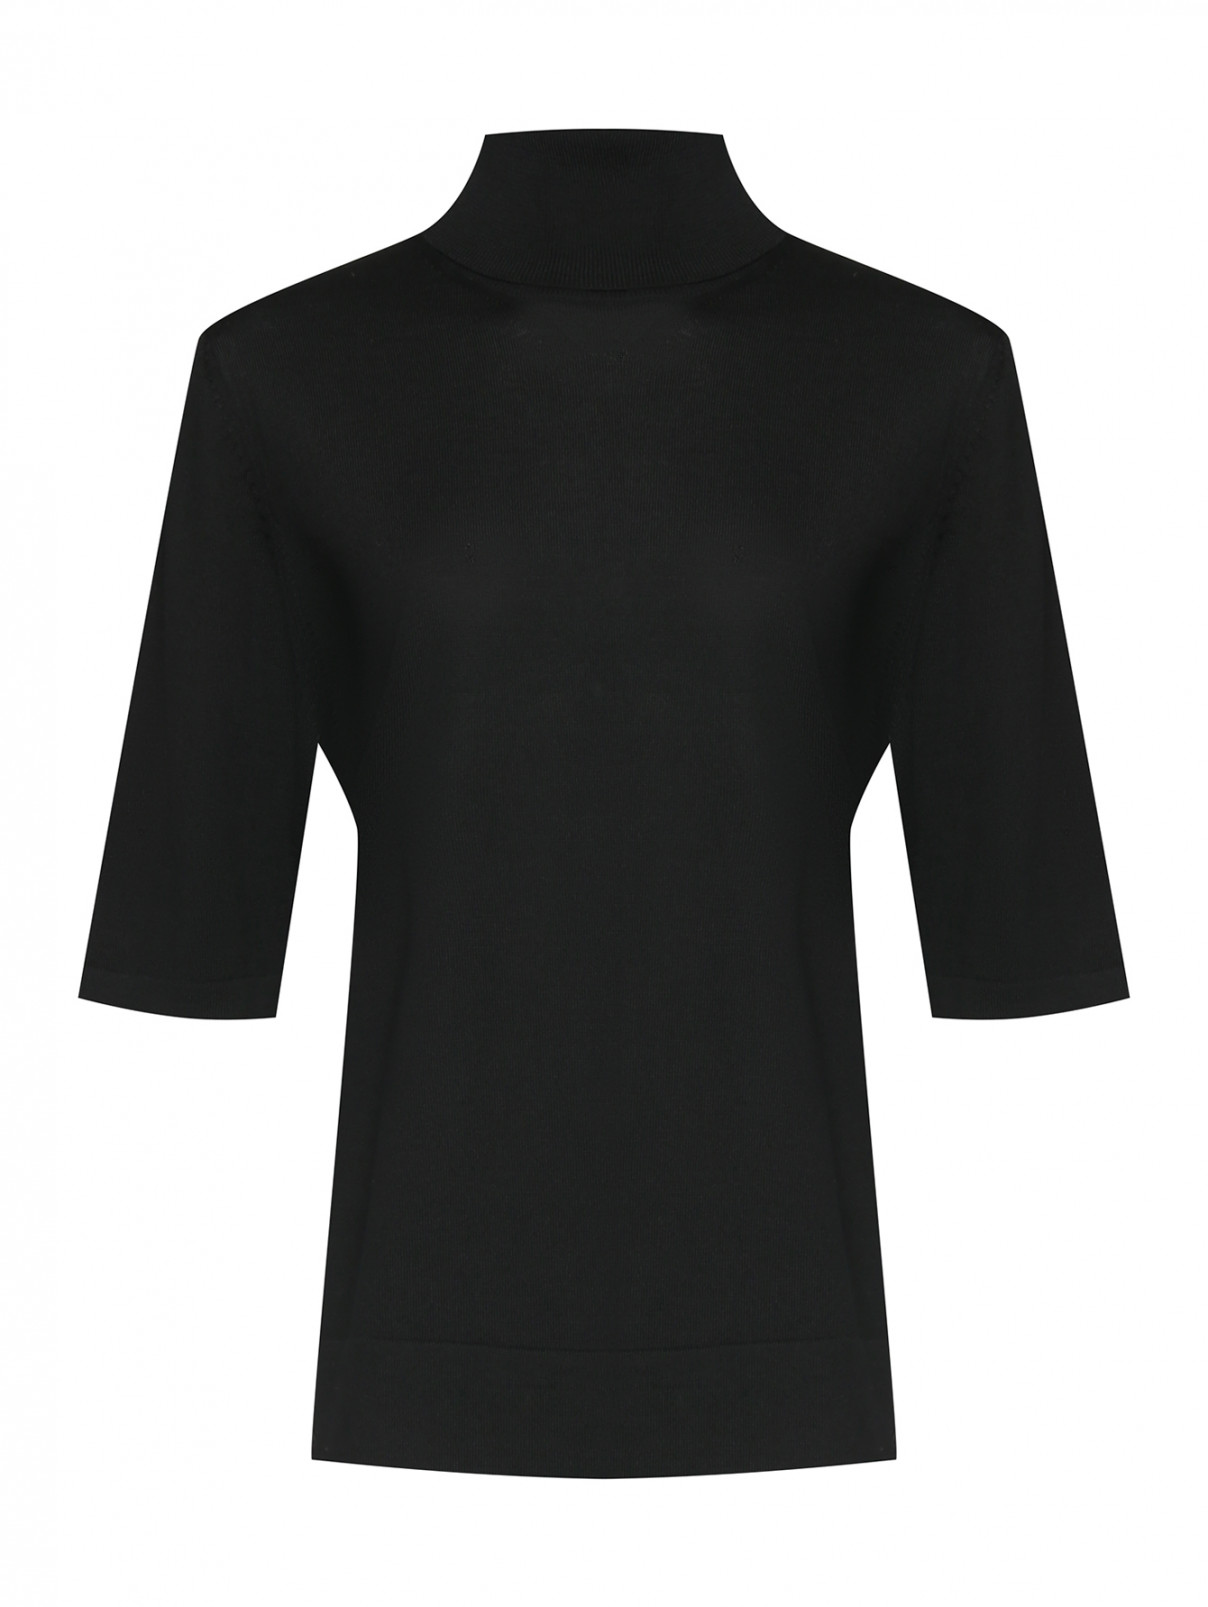 Водолазка из шерсти с коротким рукавом Marina Rinaldi  –  Общий вид  – Цвет:  Черный